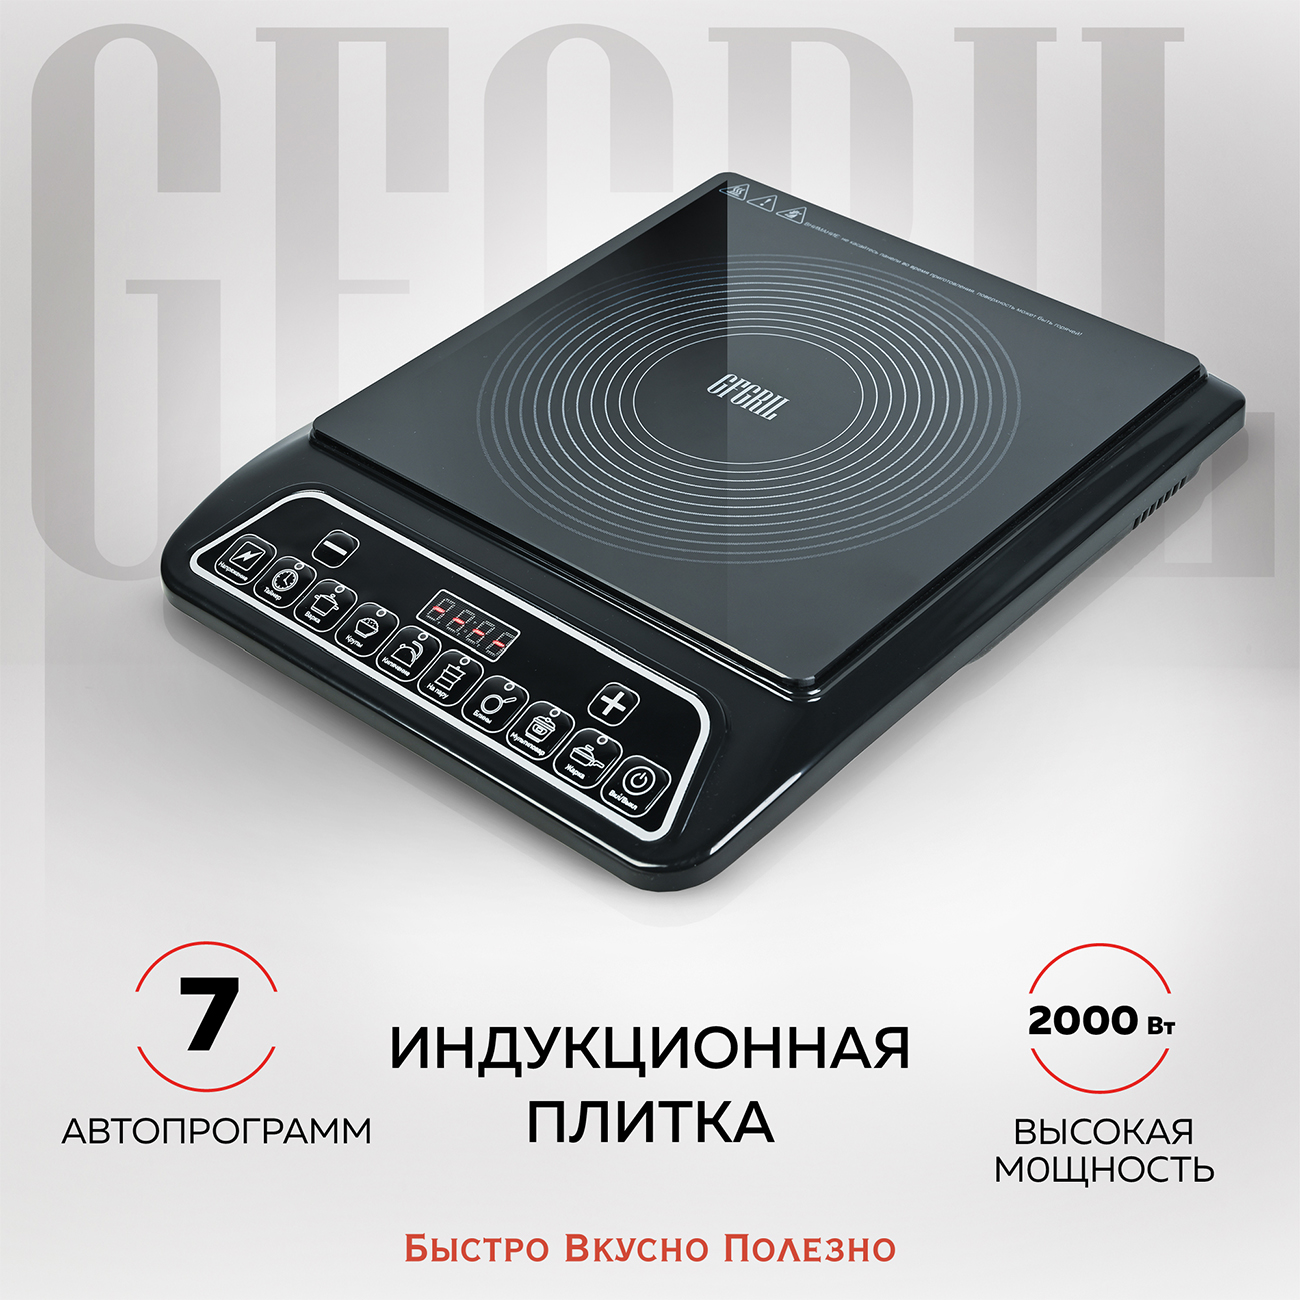 Настольная электрическая плитка GFGRIL GF-INP10 Black комплект транцевых плит xka нерж 9x18 дюймов без панели управления xka9x18